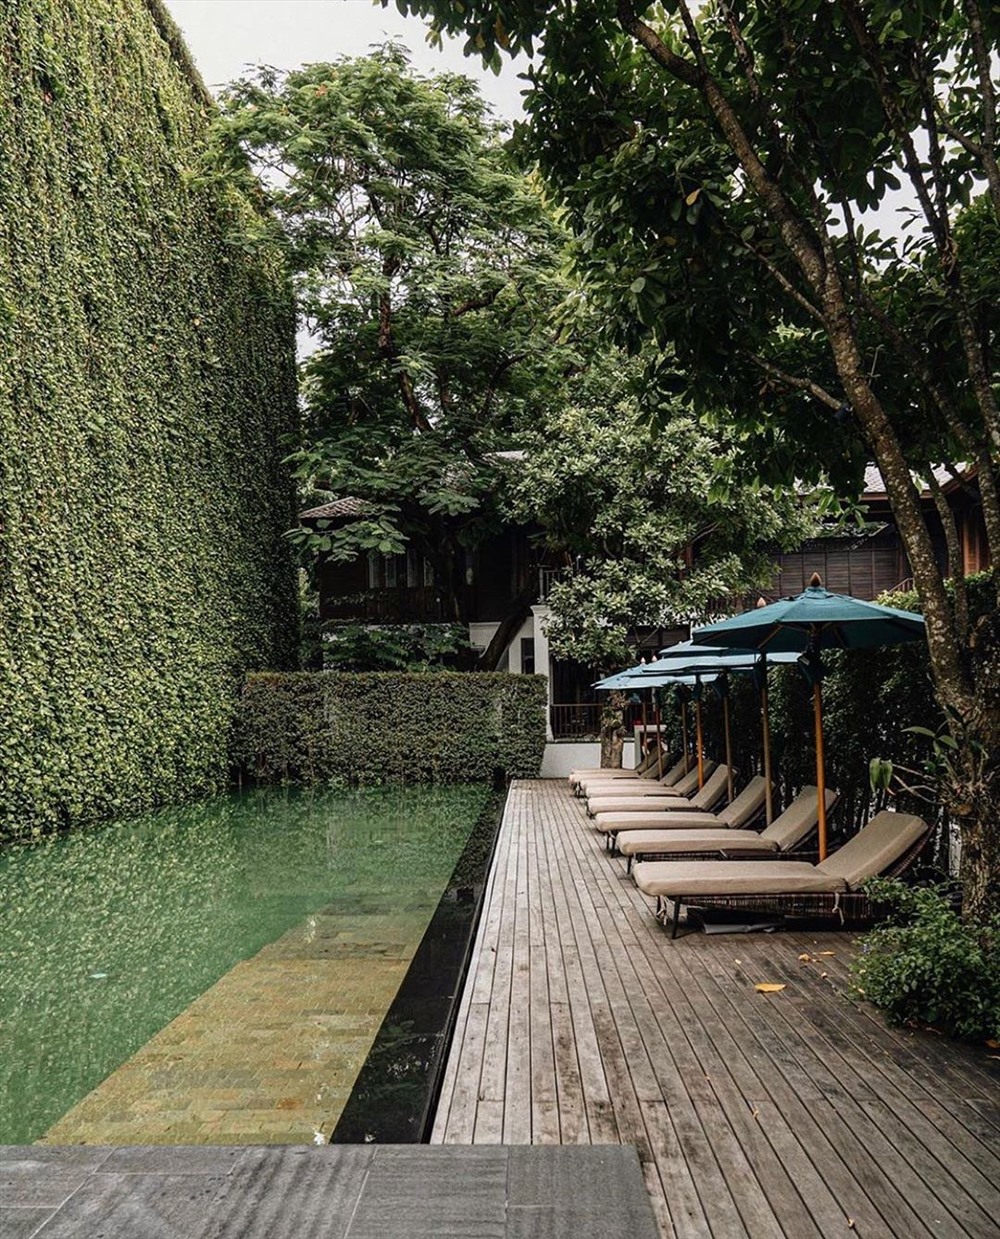 Dù nằm khá gần trung tâm thành phố Chiang Mai, khách sạn này vẫn mang một bầu không khí tĩnh lặng, gần gũi với thiên nhiên hoang sơ. Toàn bộ khuôn viên nơi đây đều nằm gói gọn trong những hàng cây xanh mát và các khu vườn xinh đẹp.